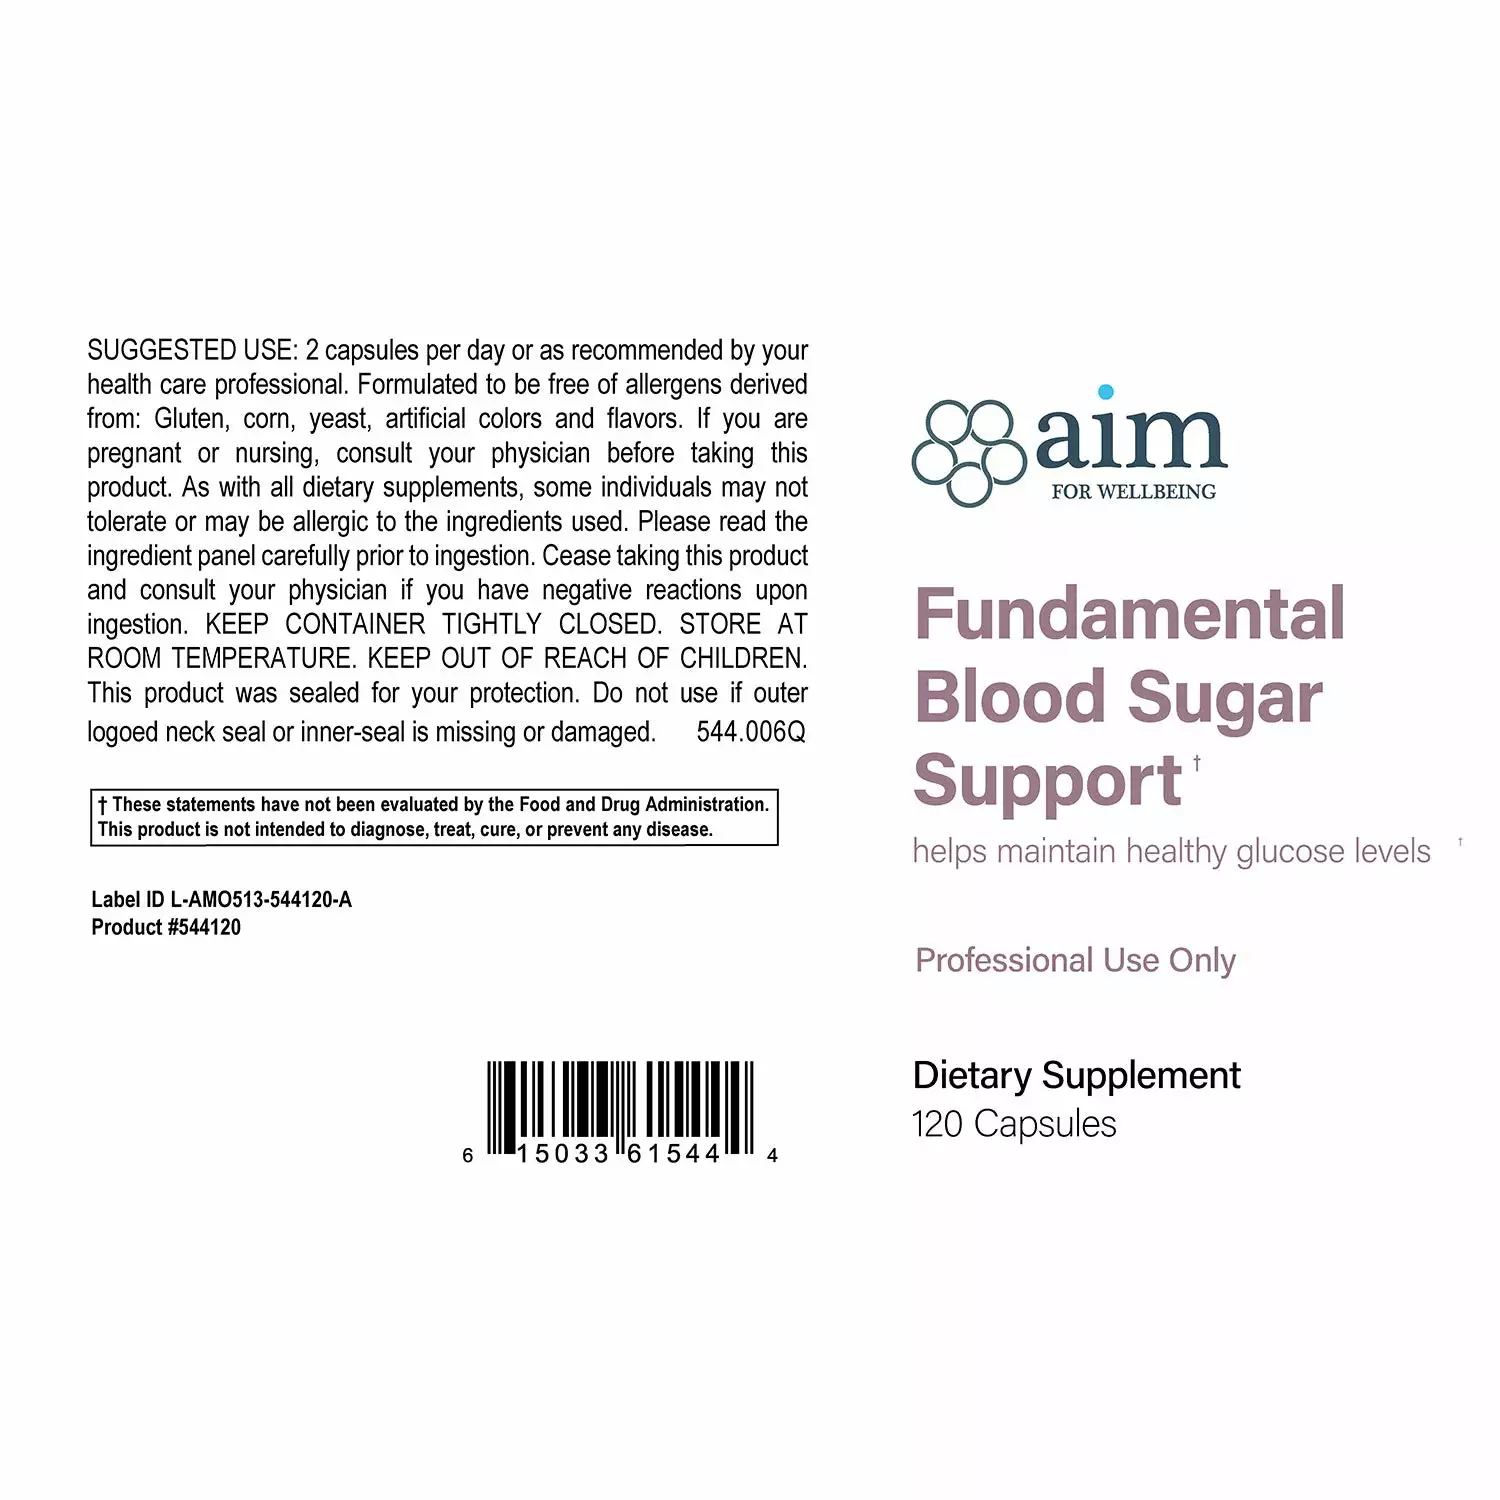 Fundamental Blood Sugar Support